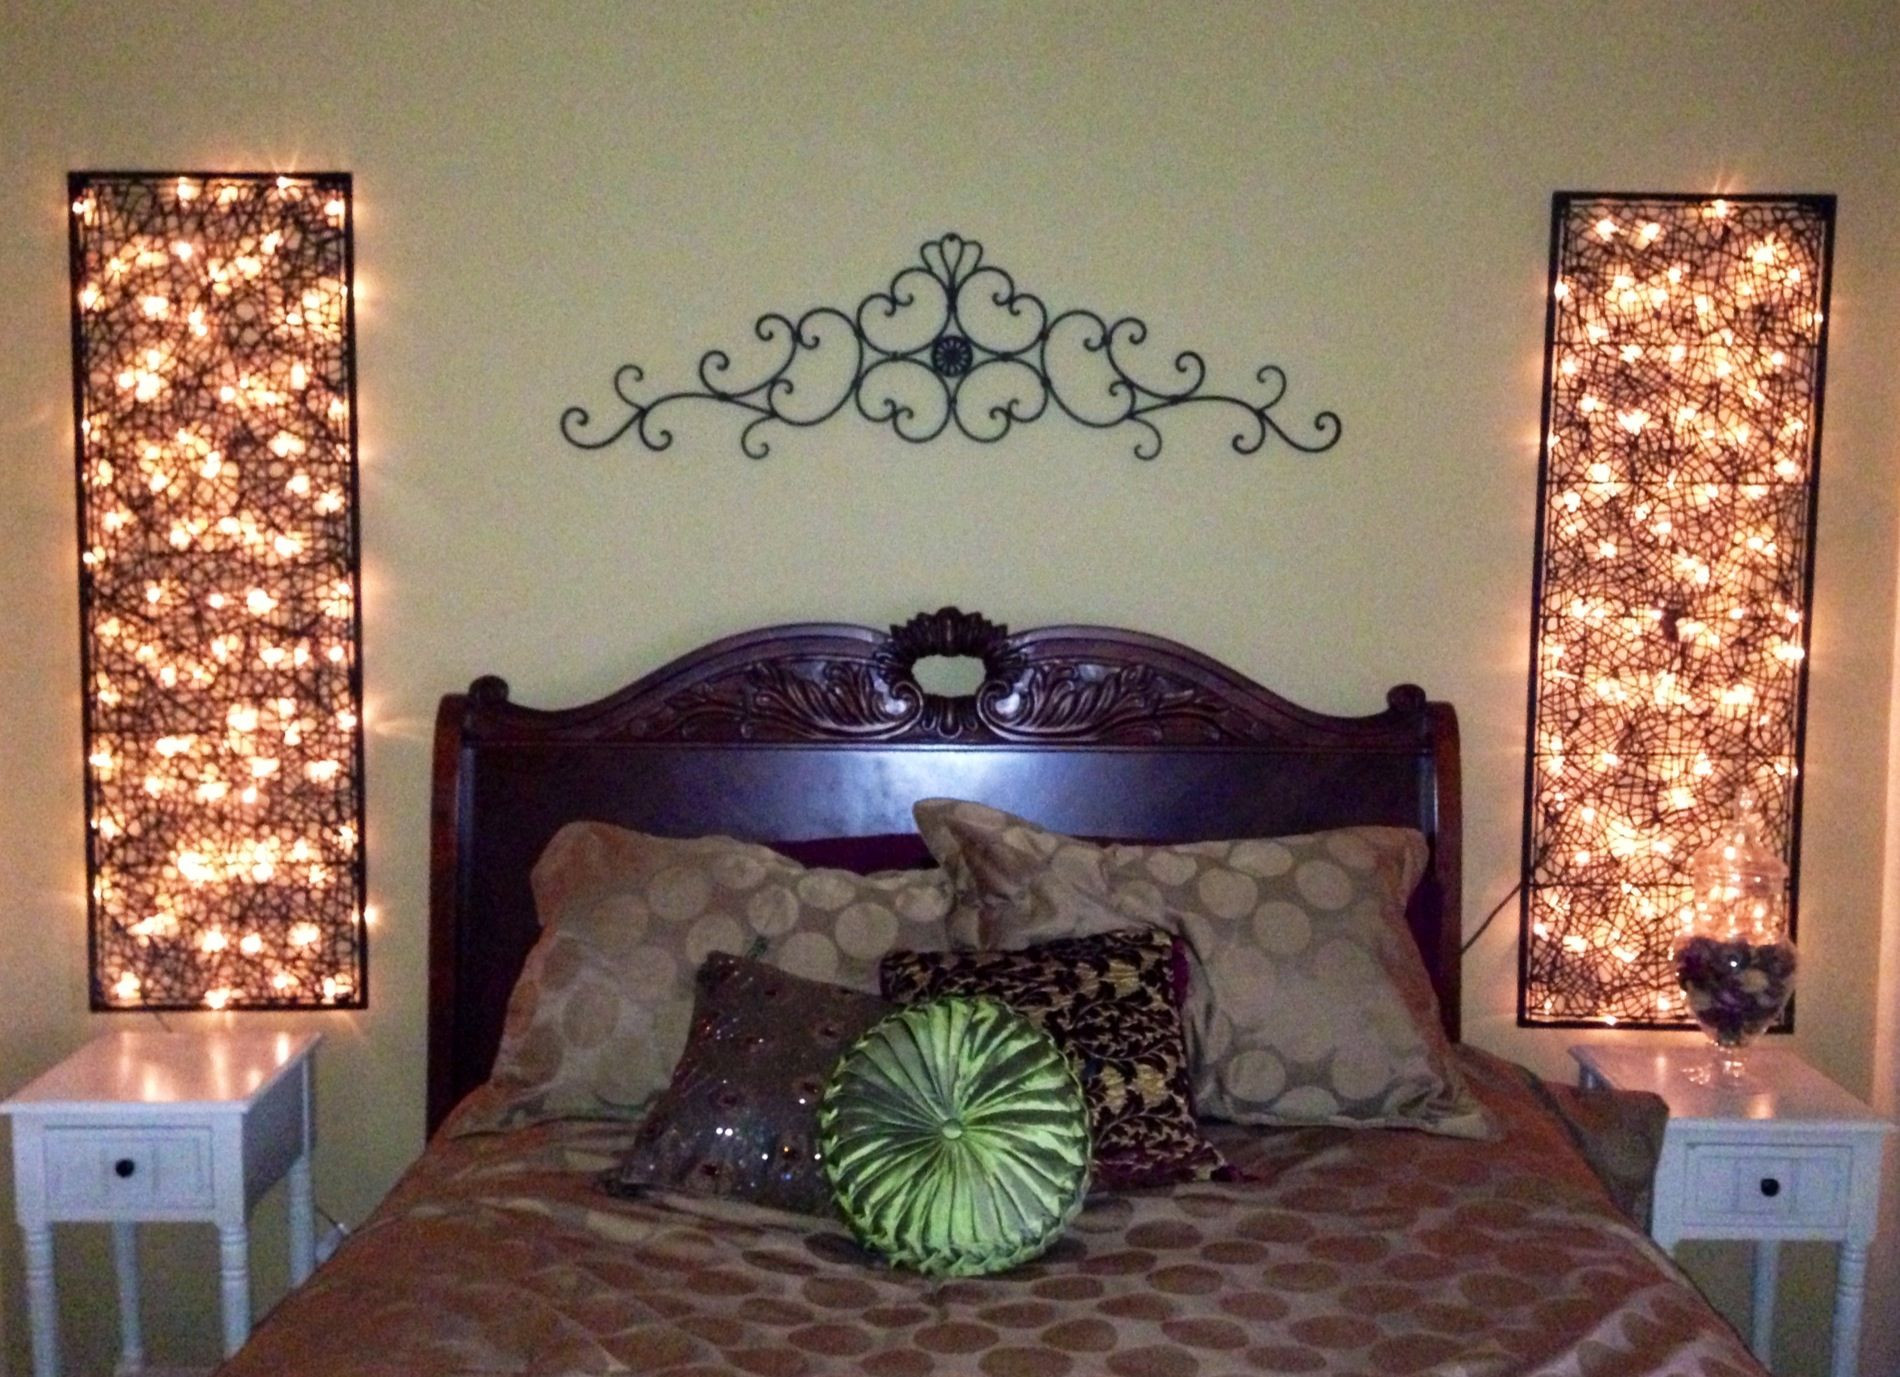 Pinterest DIY Crafts Home Decor
 DIY home decor bedroom lights